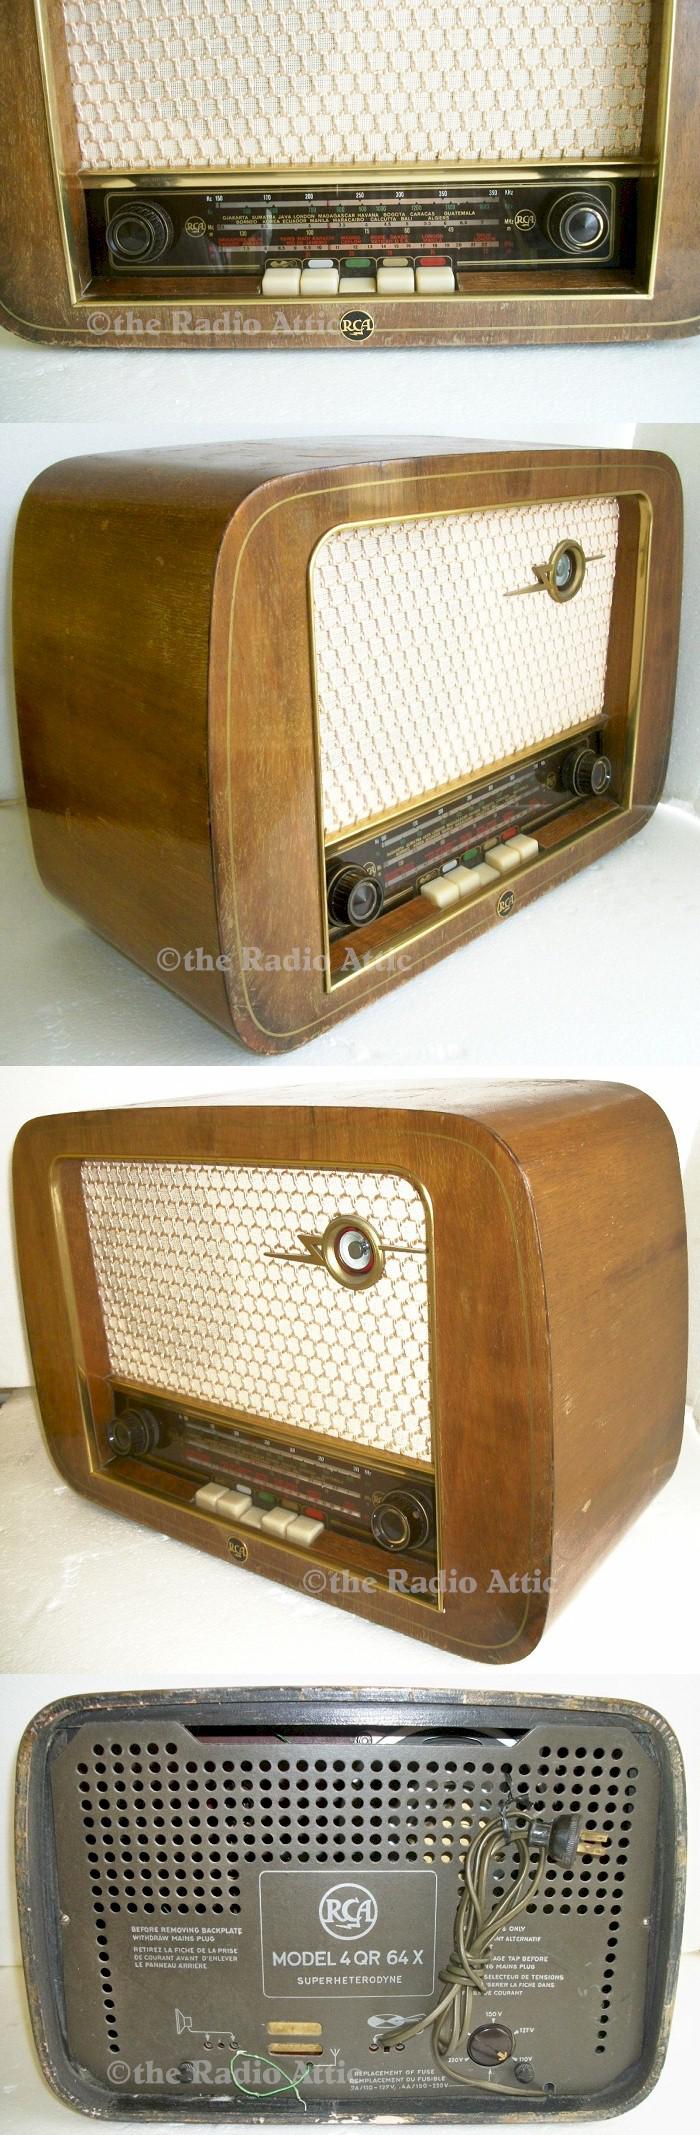 RCA 4QR64X (1955)